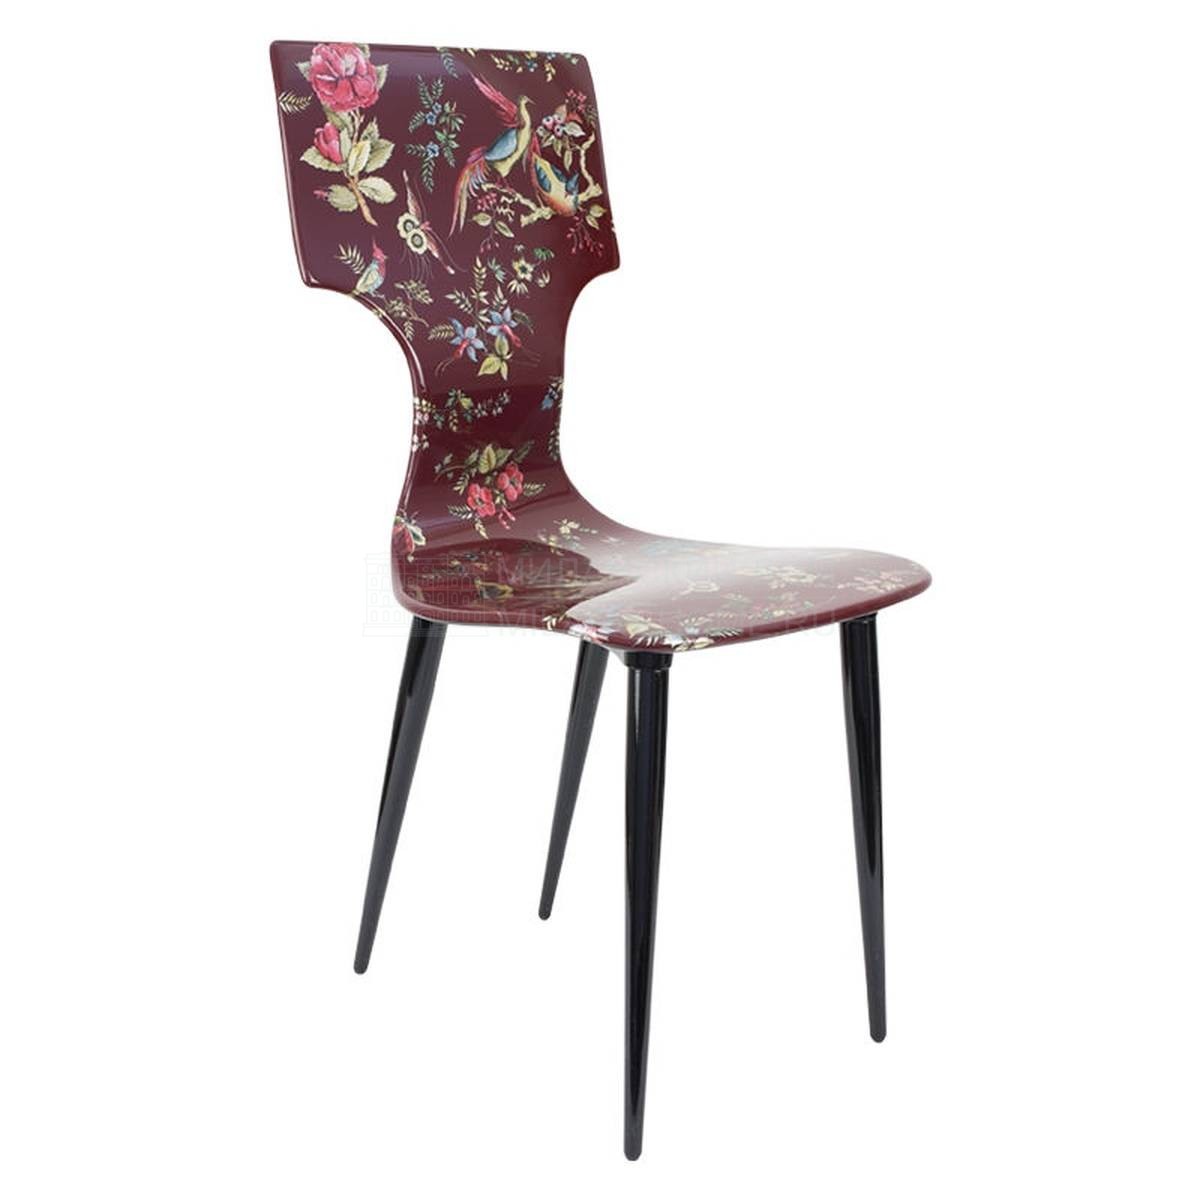 Металлический / Пластиковый стул Coromandel из Италии фабрики FORNASETTI